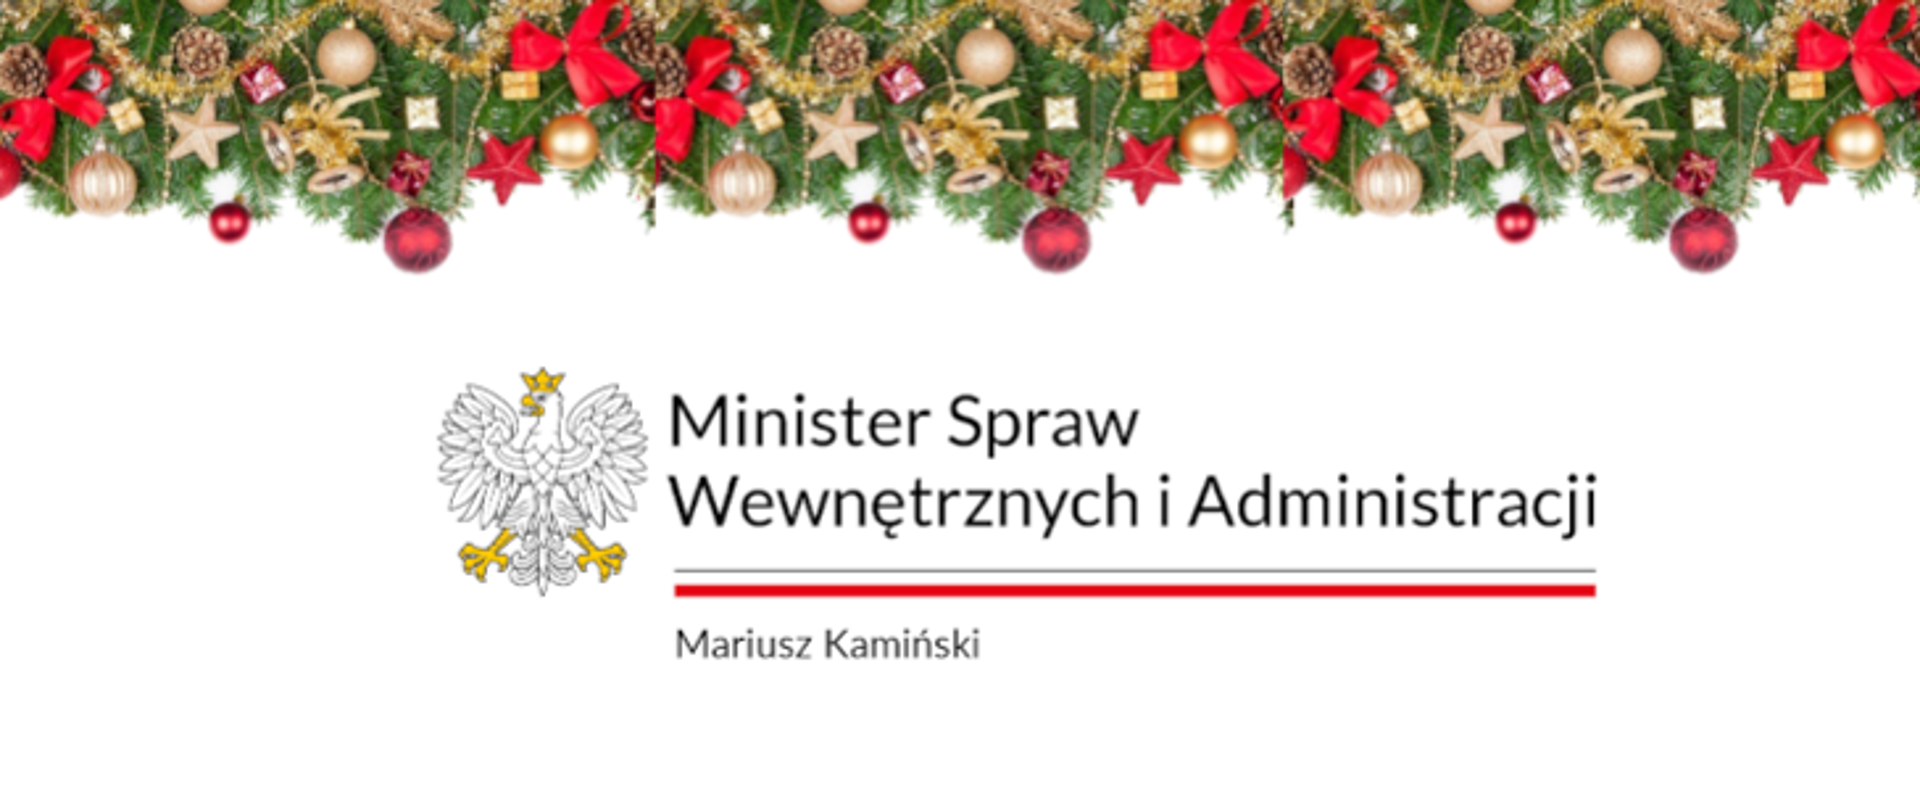 Życzenia świąteczne Ministra Spraw Wewnętrznych i Administracji